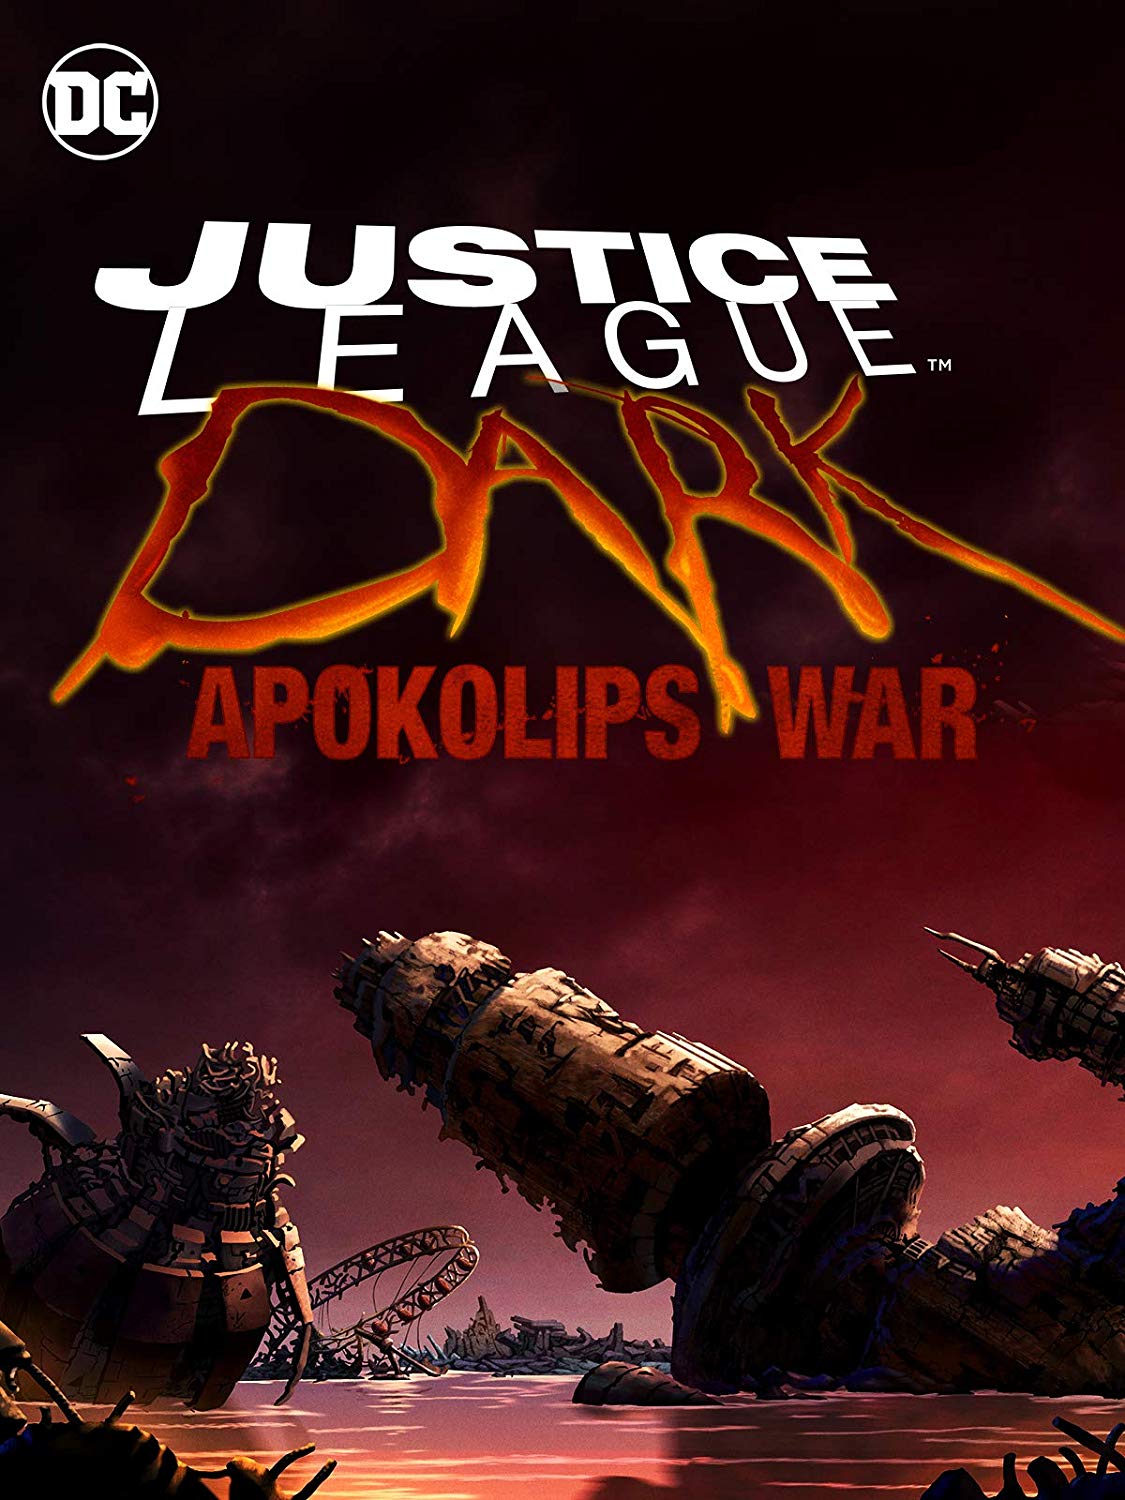 Justice League Dark Apokolips War Cast Revealed